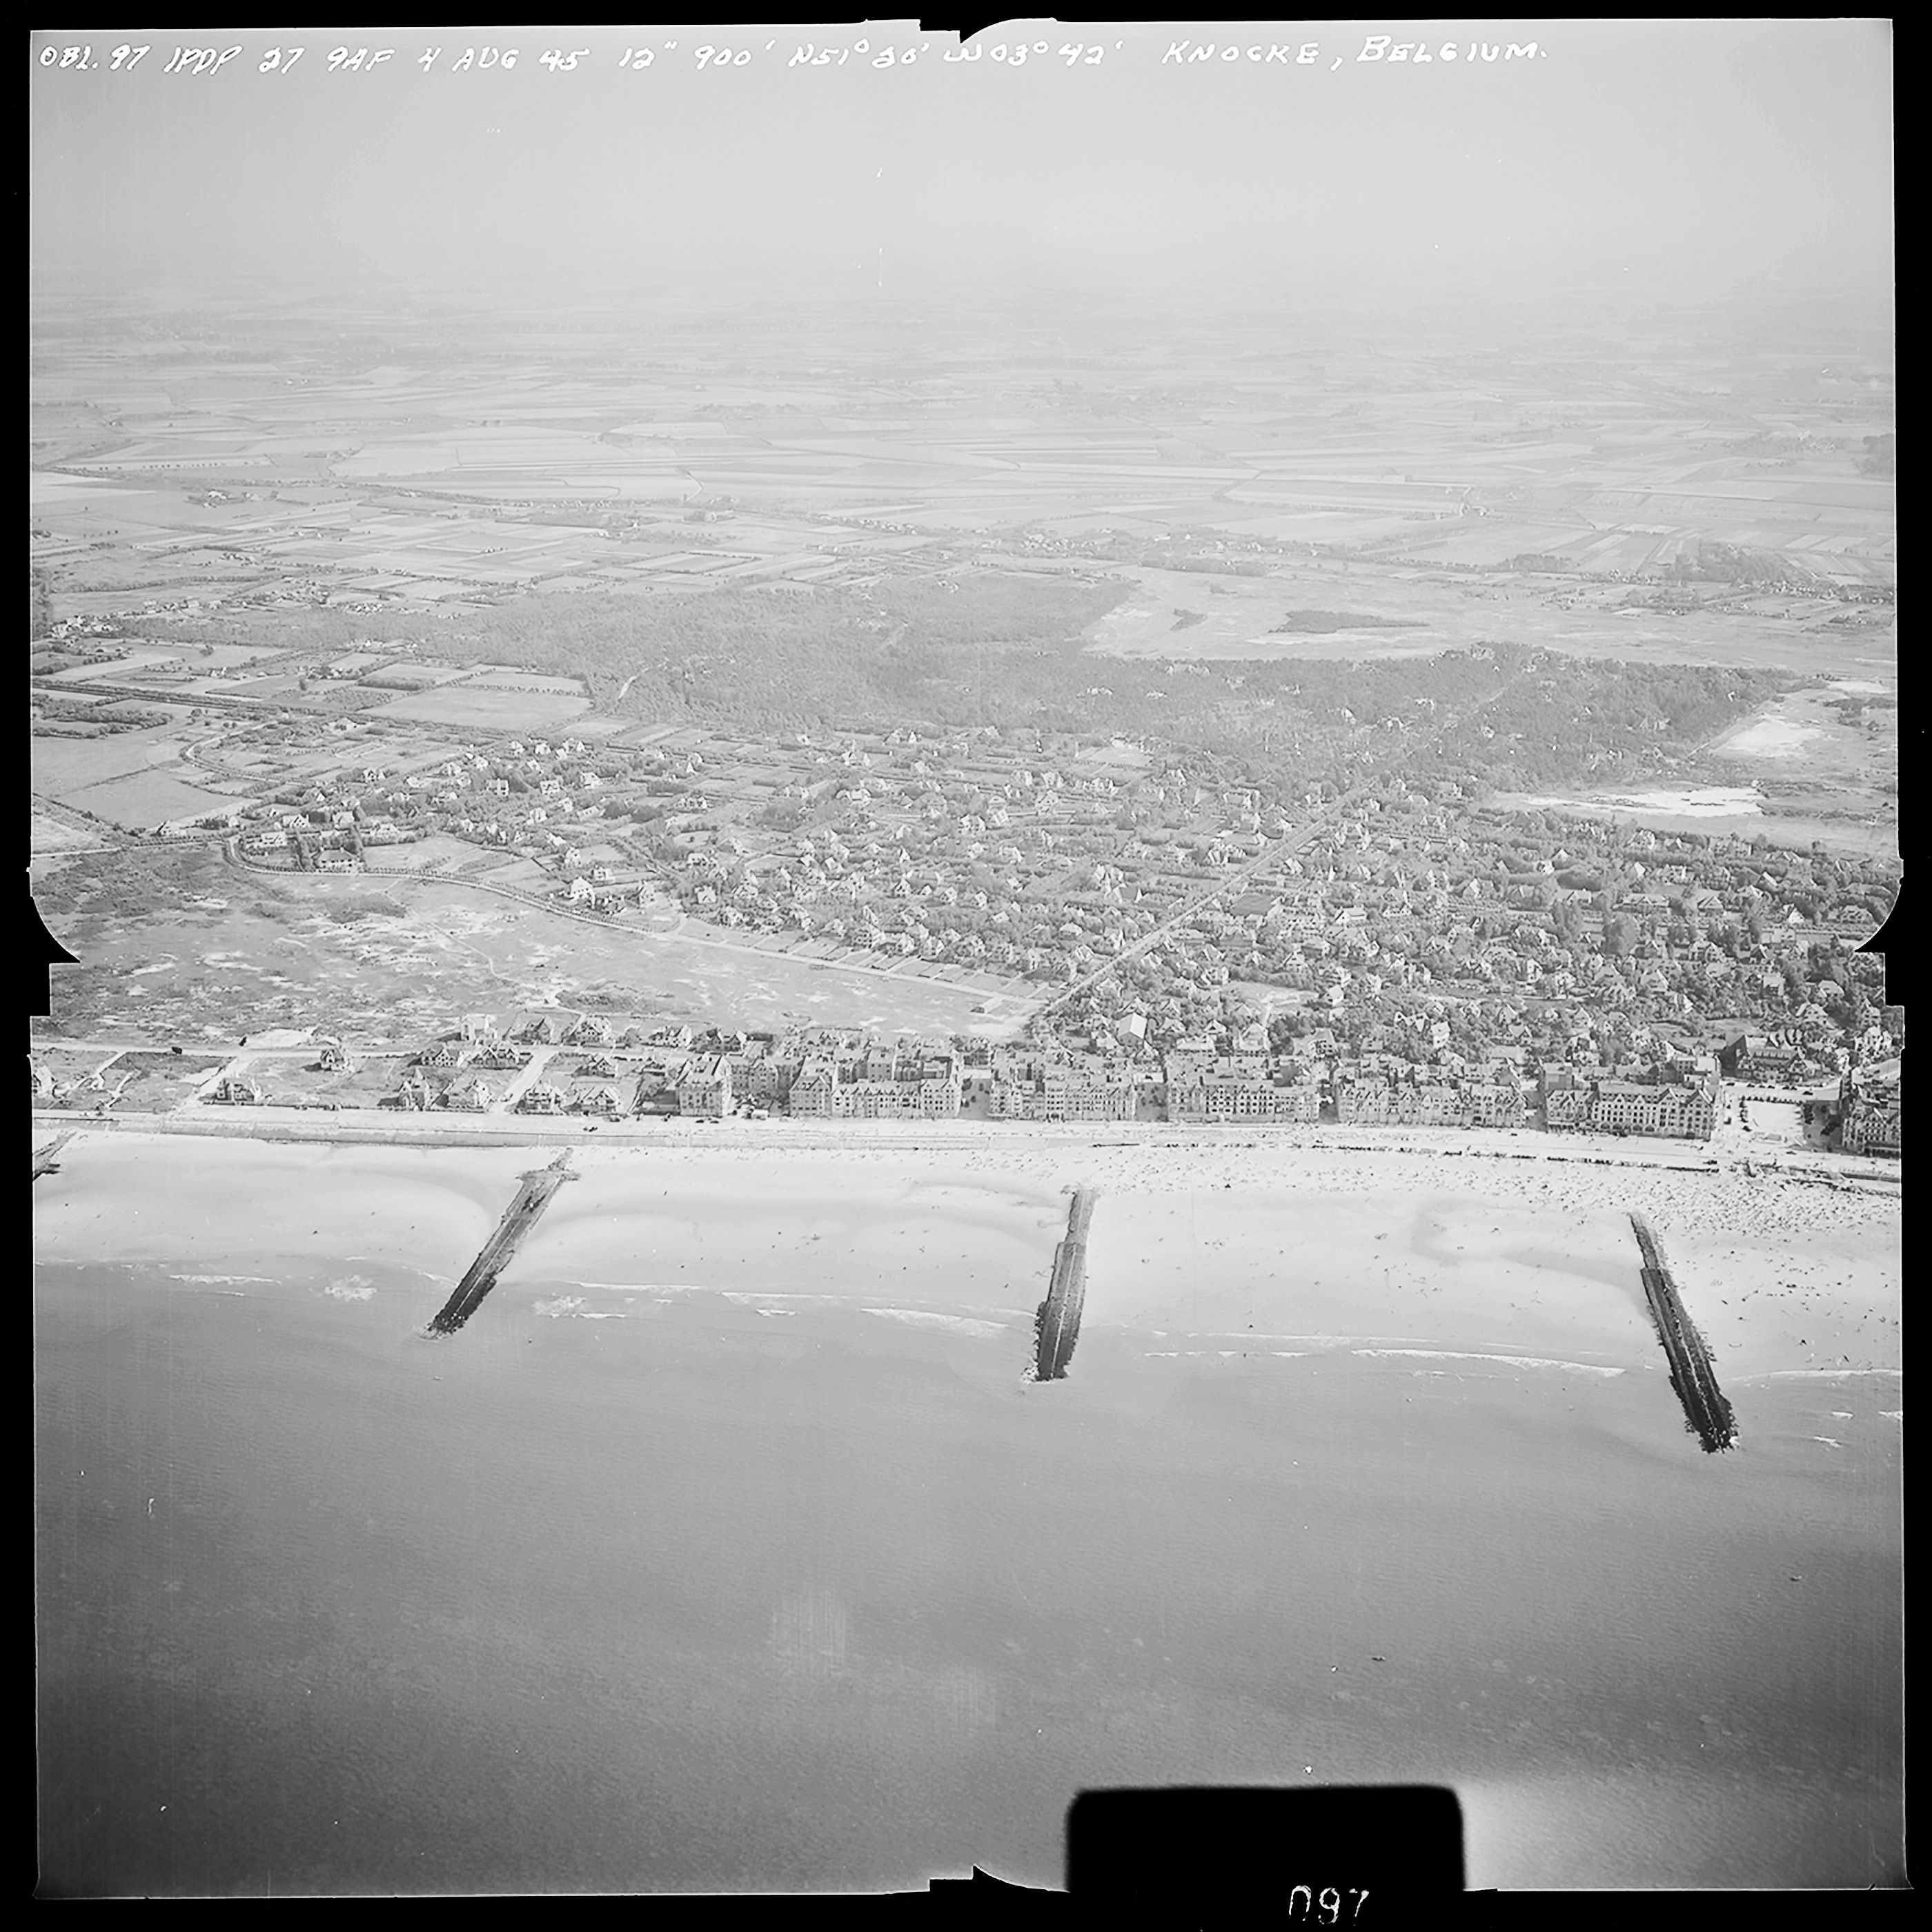 Atlantikwall Tweede Wereldoorlog in Nederland en België en Frankrijk - Luchtfoto's en historische luchtopnames - 1945 oorlog foto's en beelden